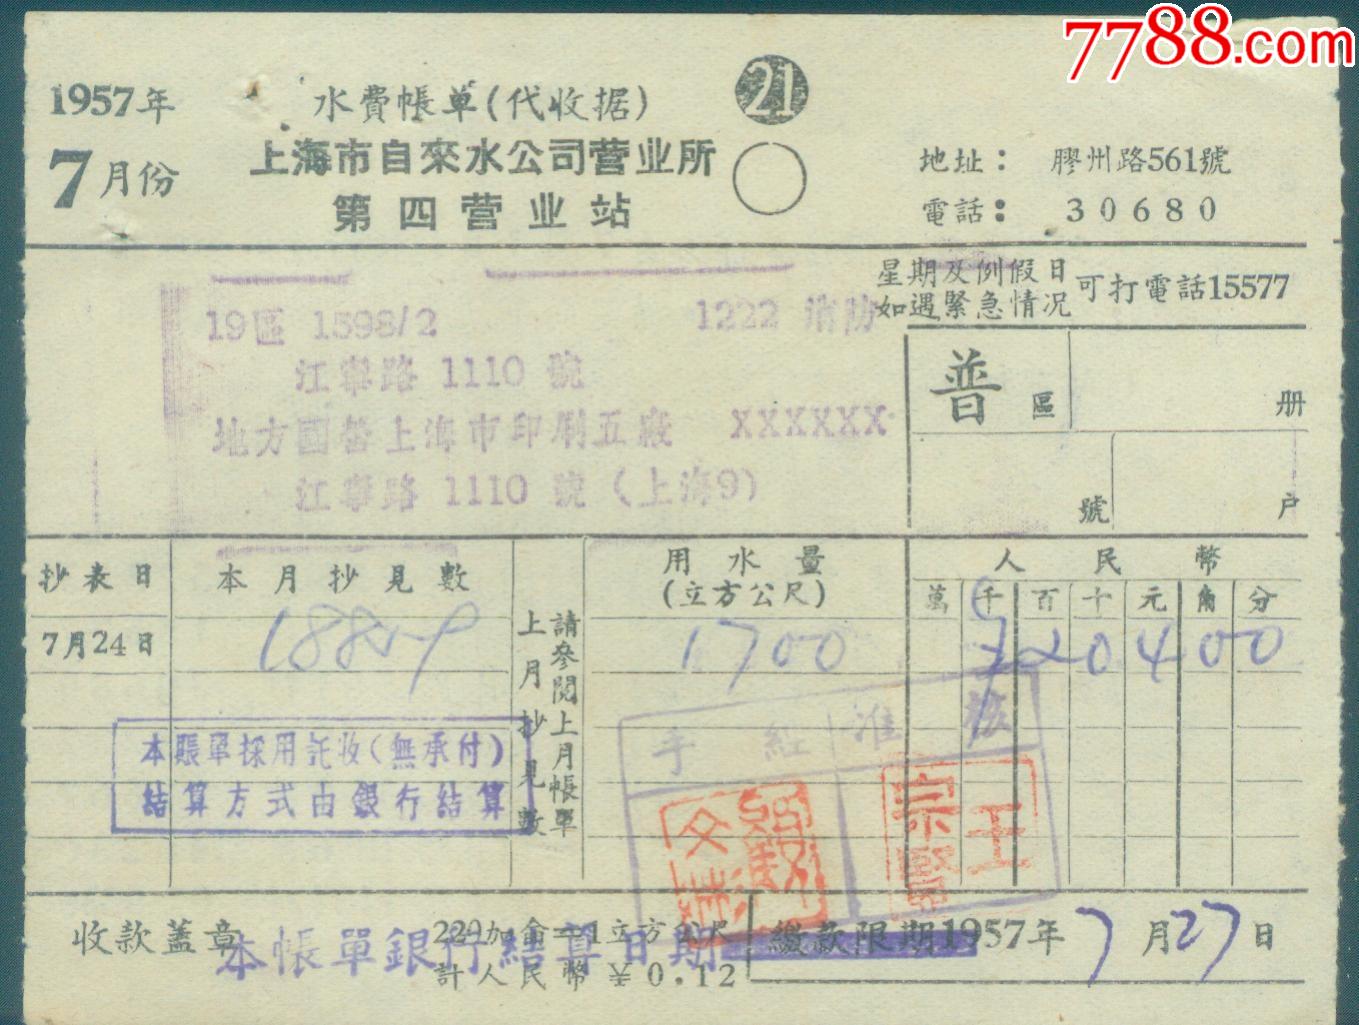 1957年7月上海市自来水公司营业所第一分所【水费账单】